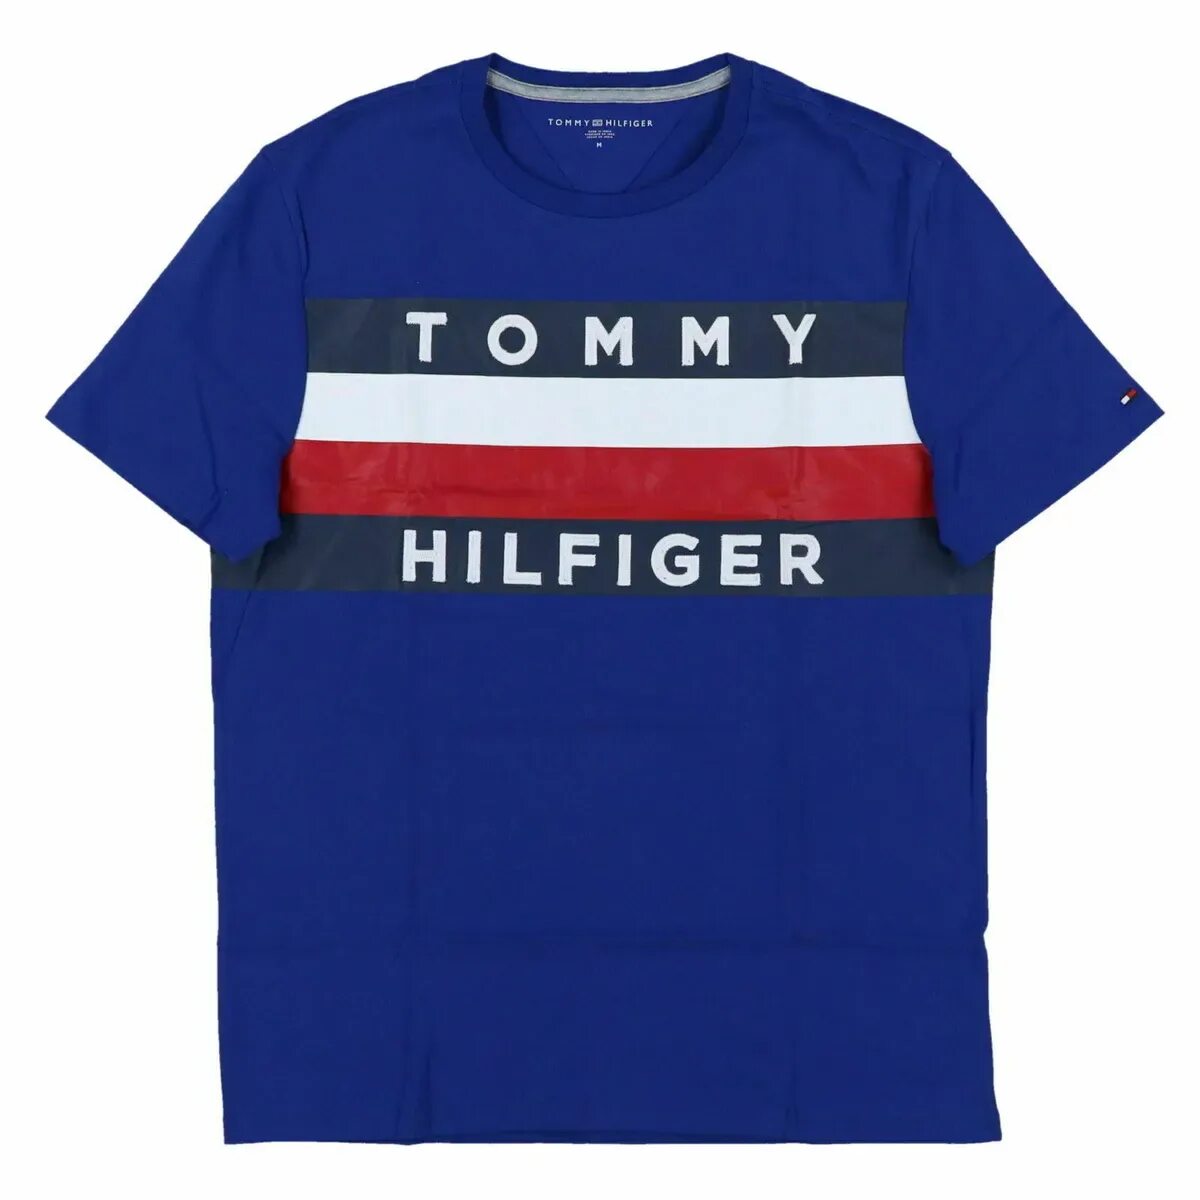 Футболка Тони Хилфигер. Принт Томми Хилфигер. Tommy Hilfiger TJ 0020. Футболка Томи халфиджер.